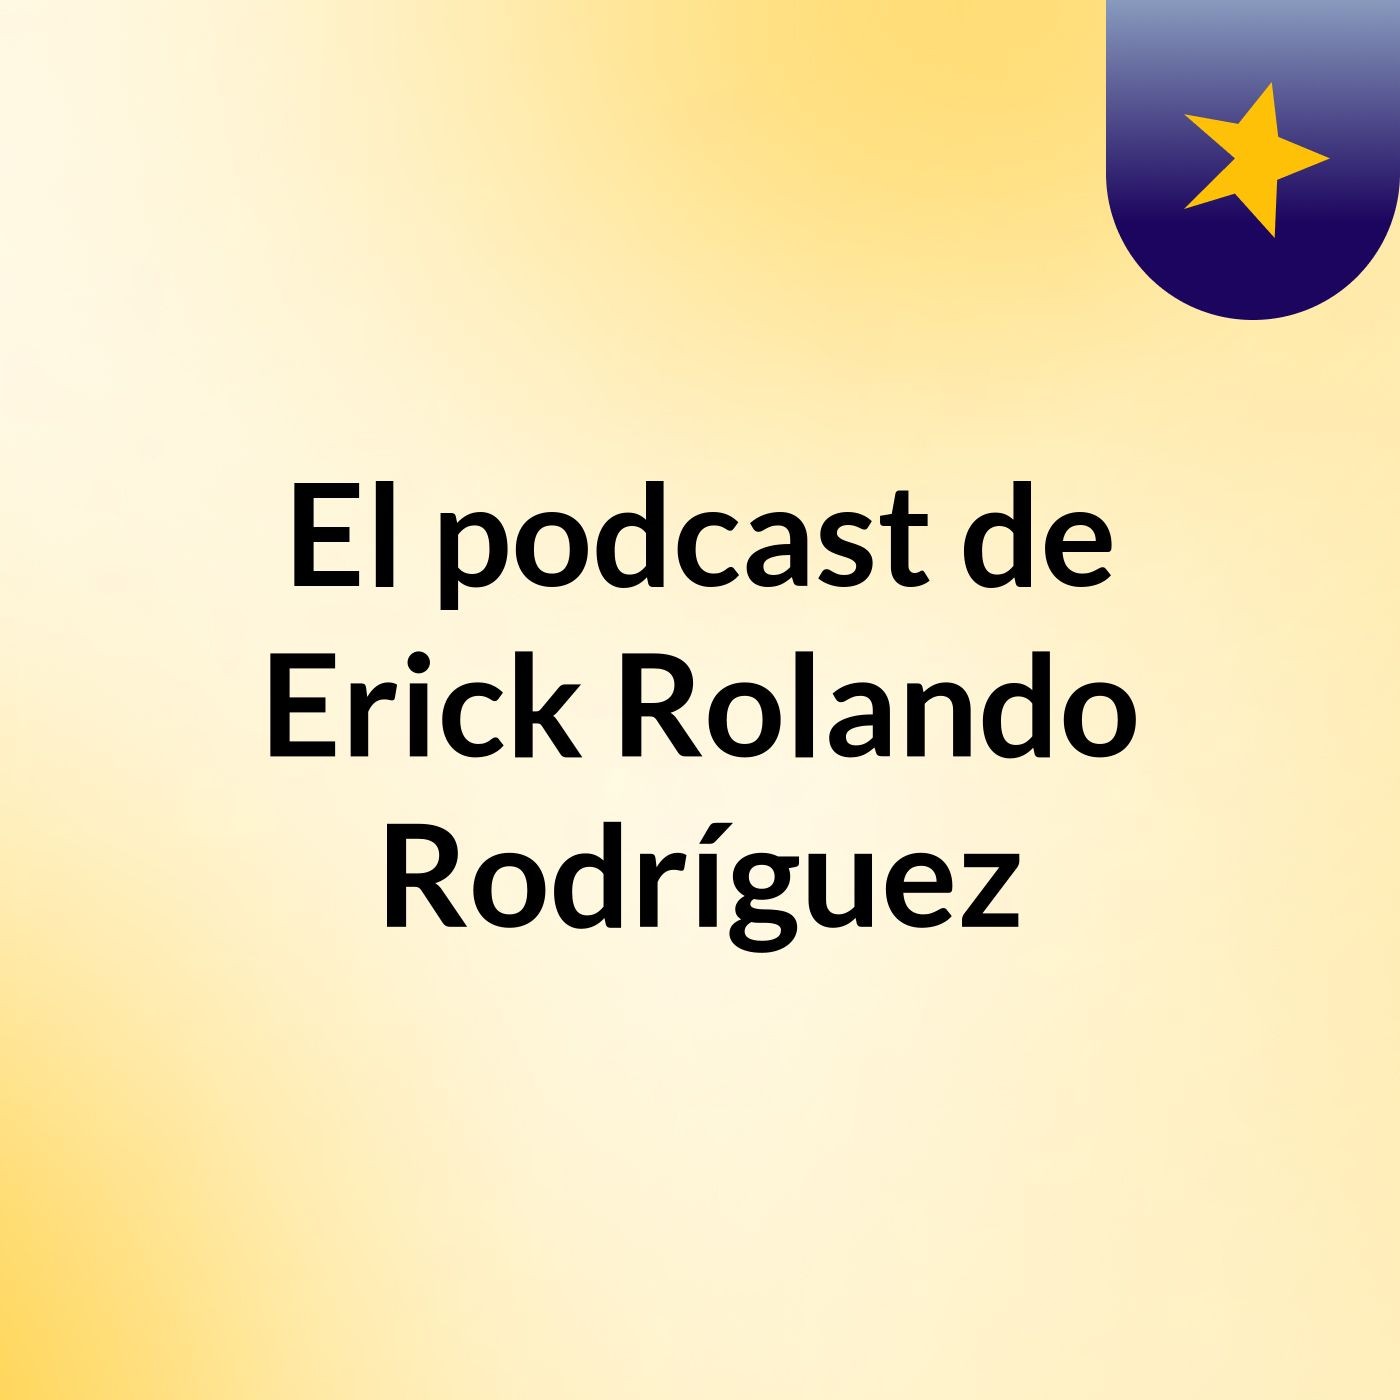 Episodio 2 - El podcast de Erick Rolando Rodríguez